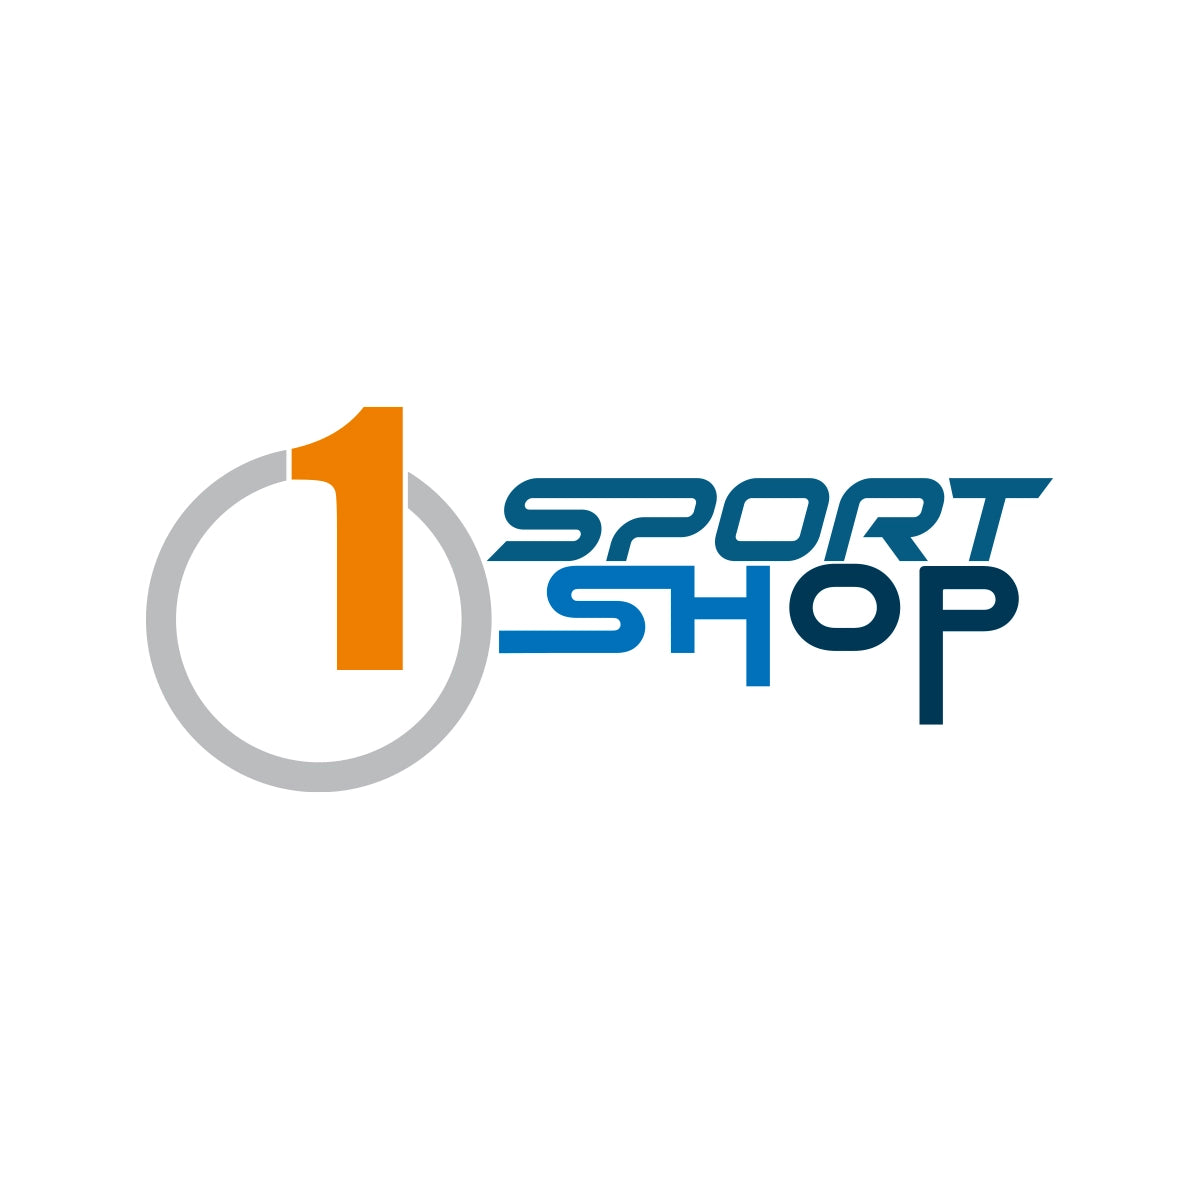 1sportshop.com